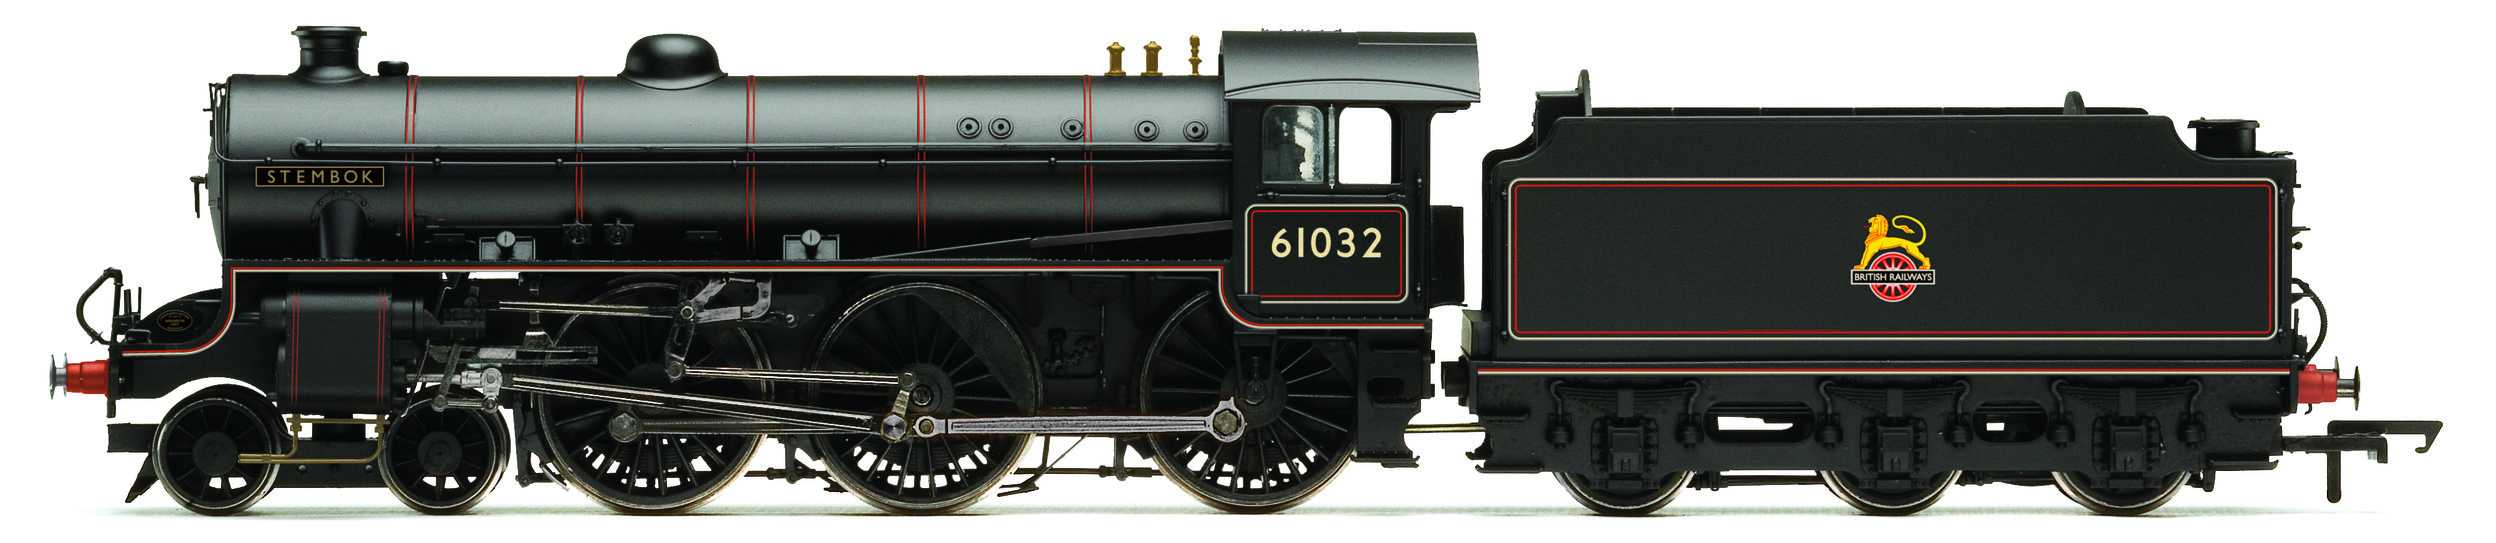 Trains miniatures : locomotives et autorail - BR, classe B1, 4-6-0, 61